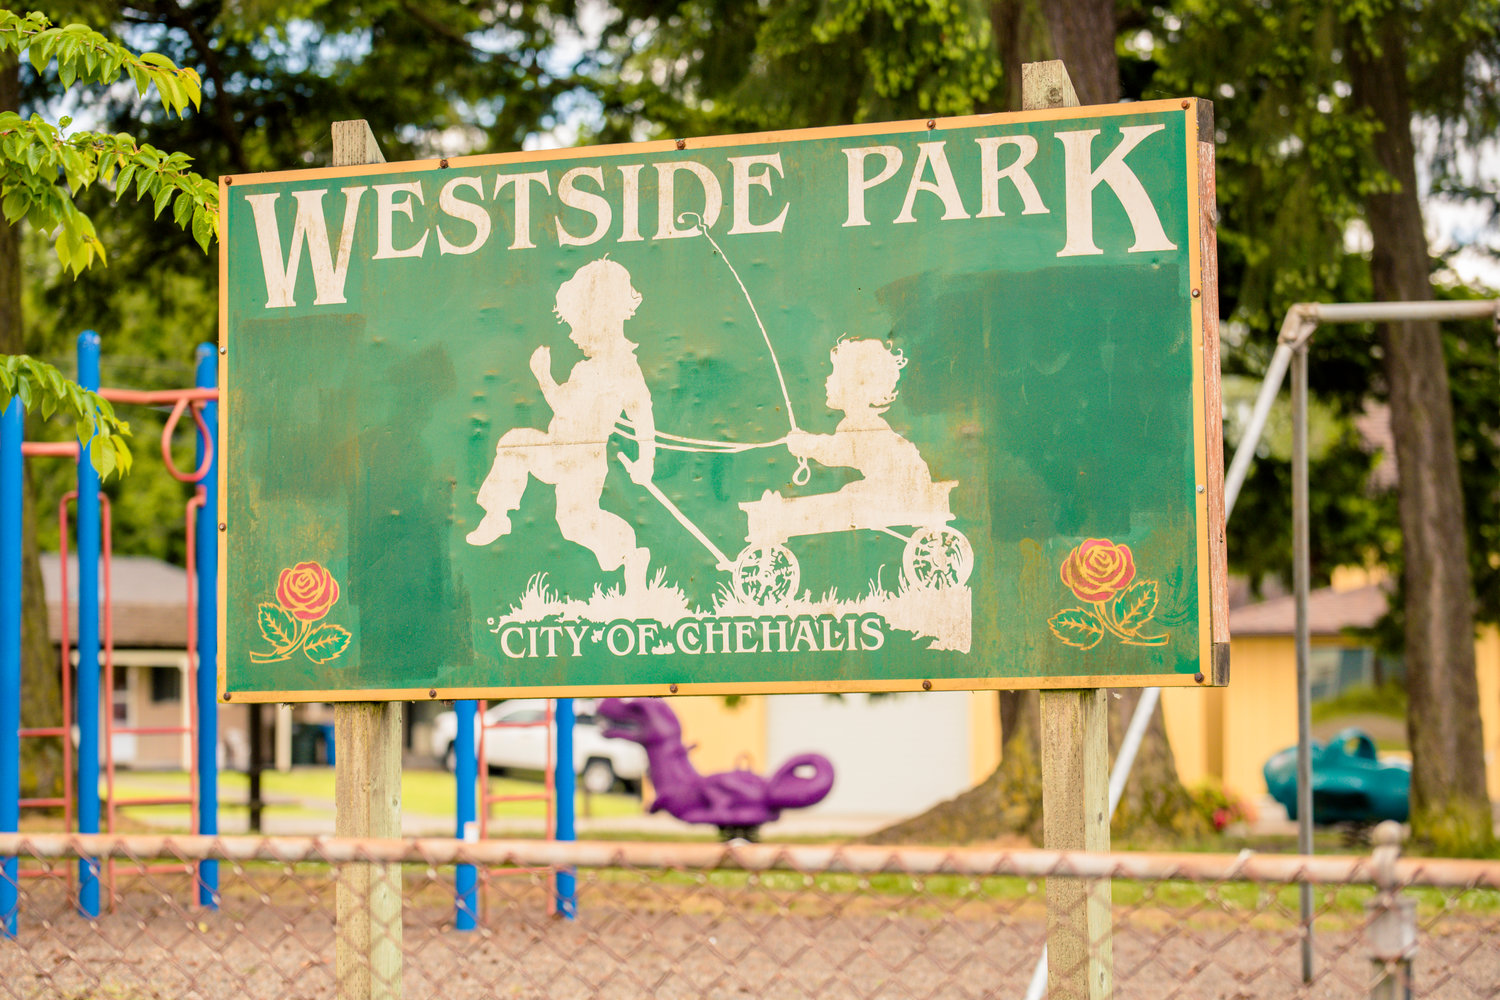 Westside Park in Chehalis